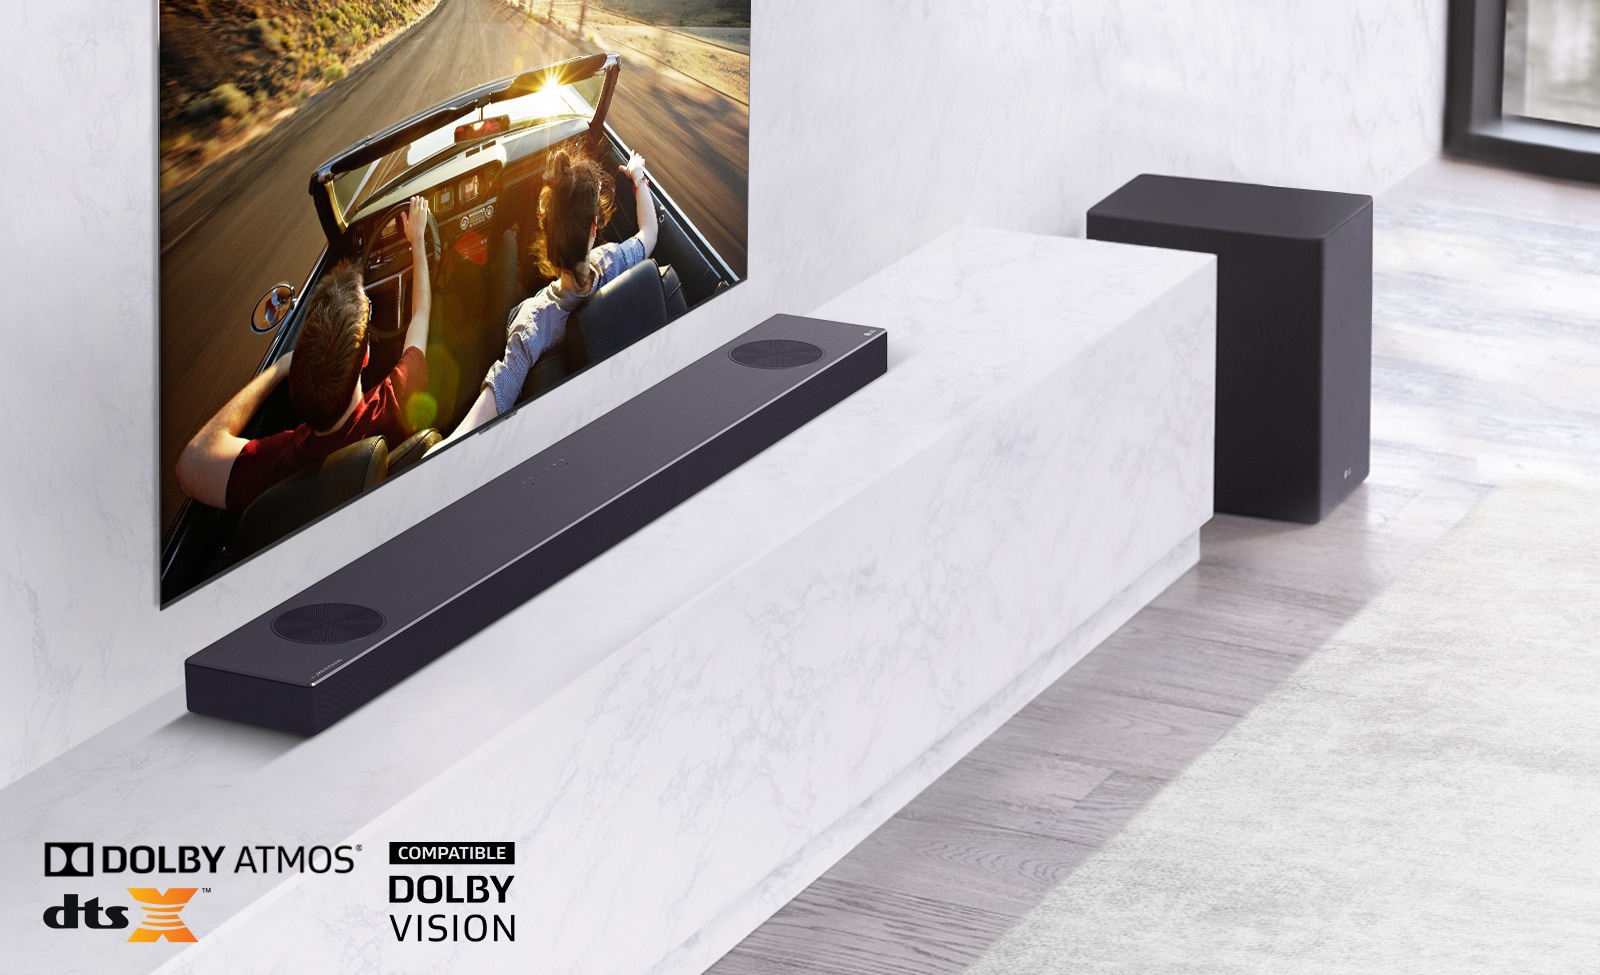 Η τηλεόραση βρίσκεται στον τοίχο, το LG Soundbar βρίσκεται κάτω από ένα λευκό μαρμάρινο ράφι, με ένα subwoofer στα δεξιά. Η τηλεόραση δείχνει ένα ζευγάρι μέσα σε ένα αυτοκίνητο.